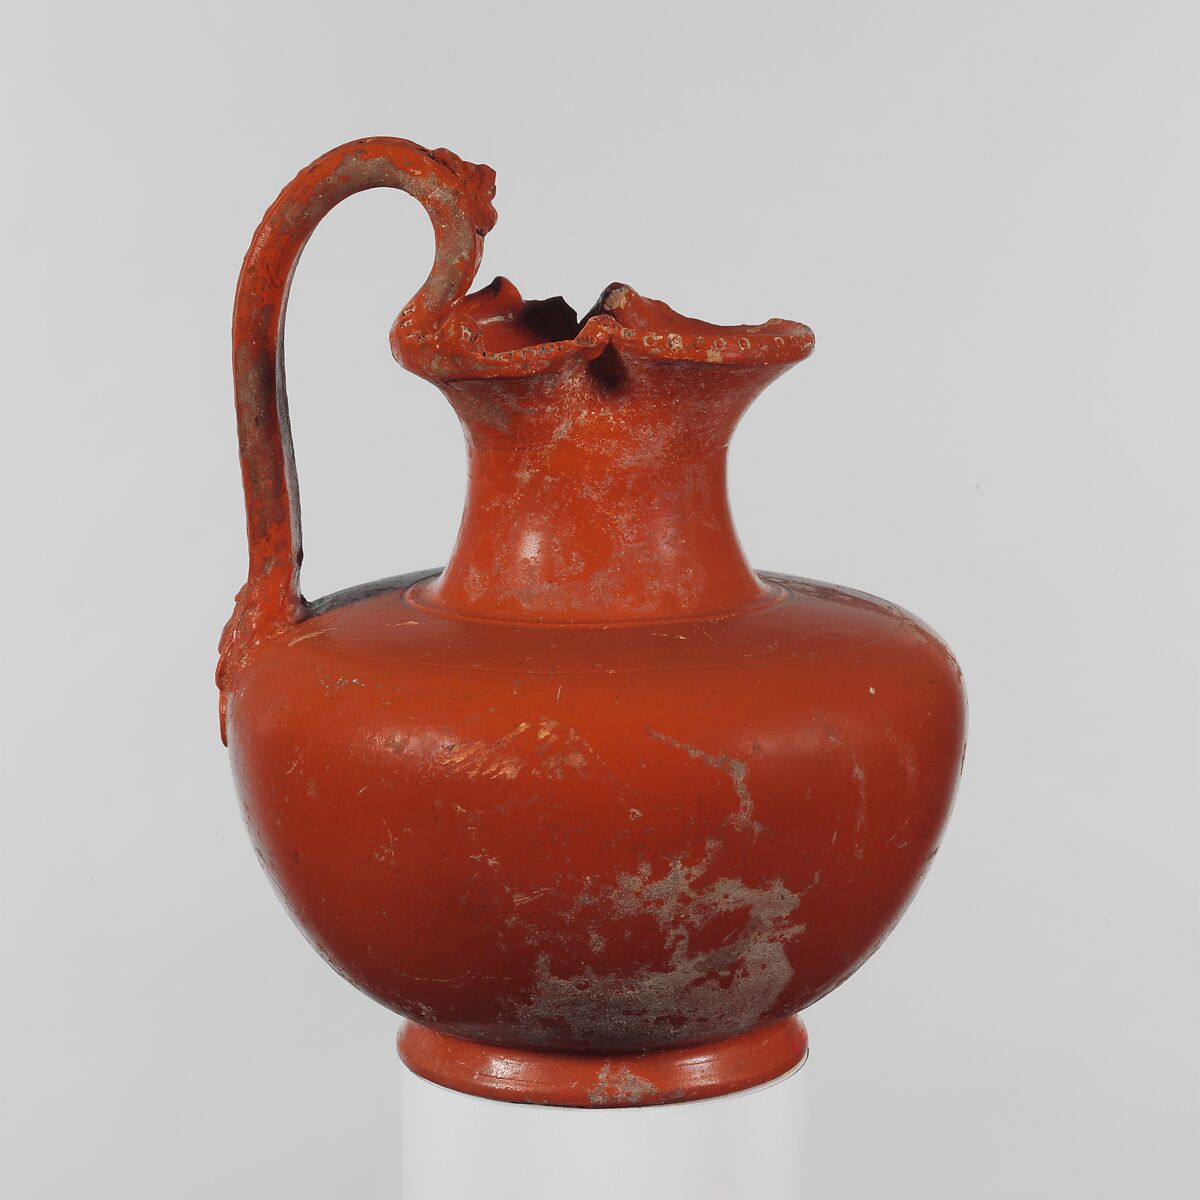 Terracotta oinochoe (wine jug), Terracotta, Roman 